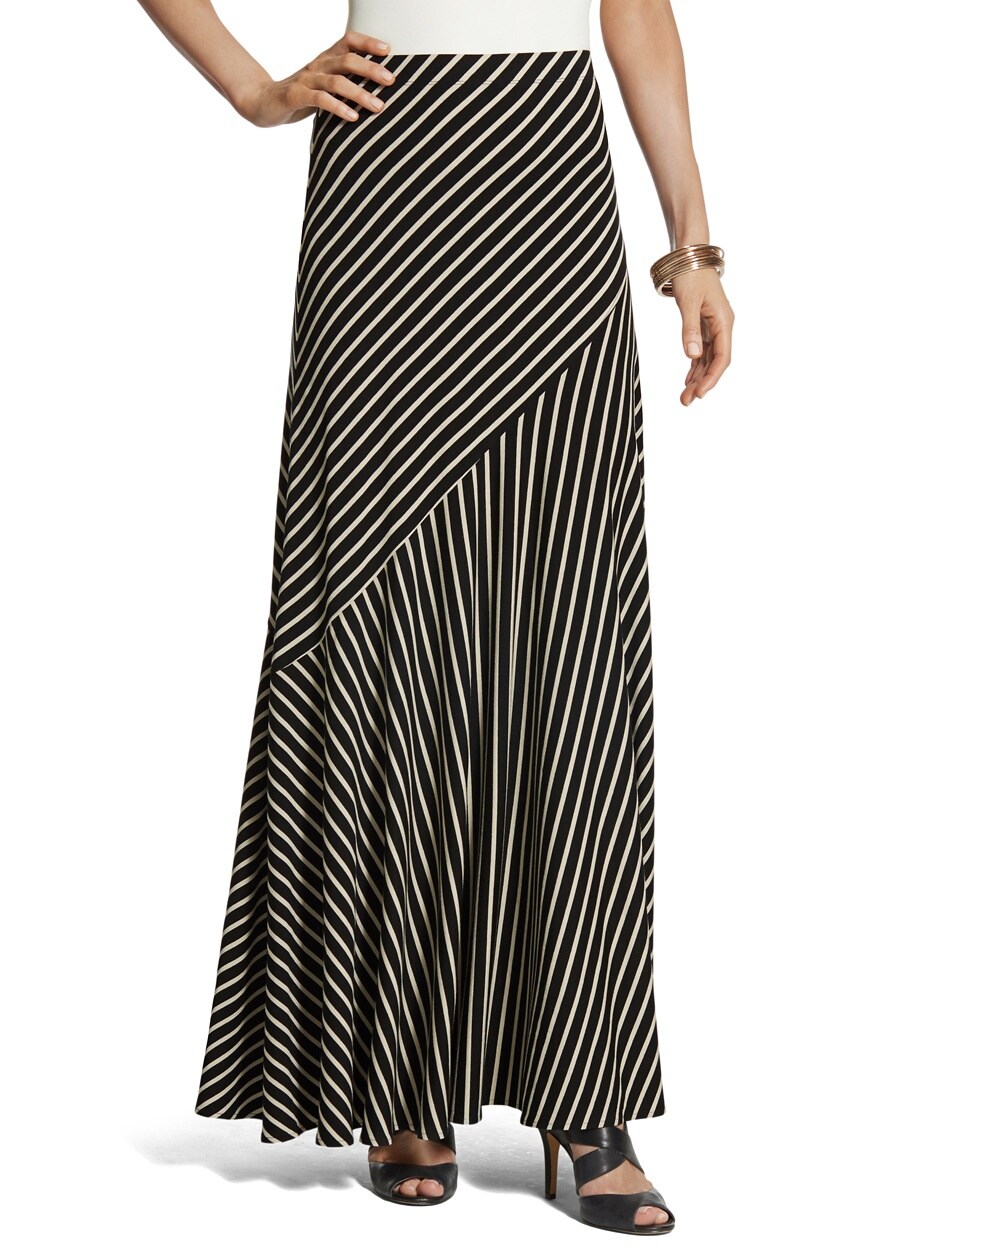 Thin Stripe Sammi Skirt